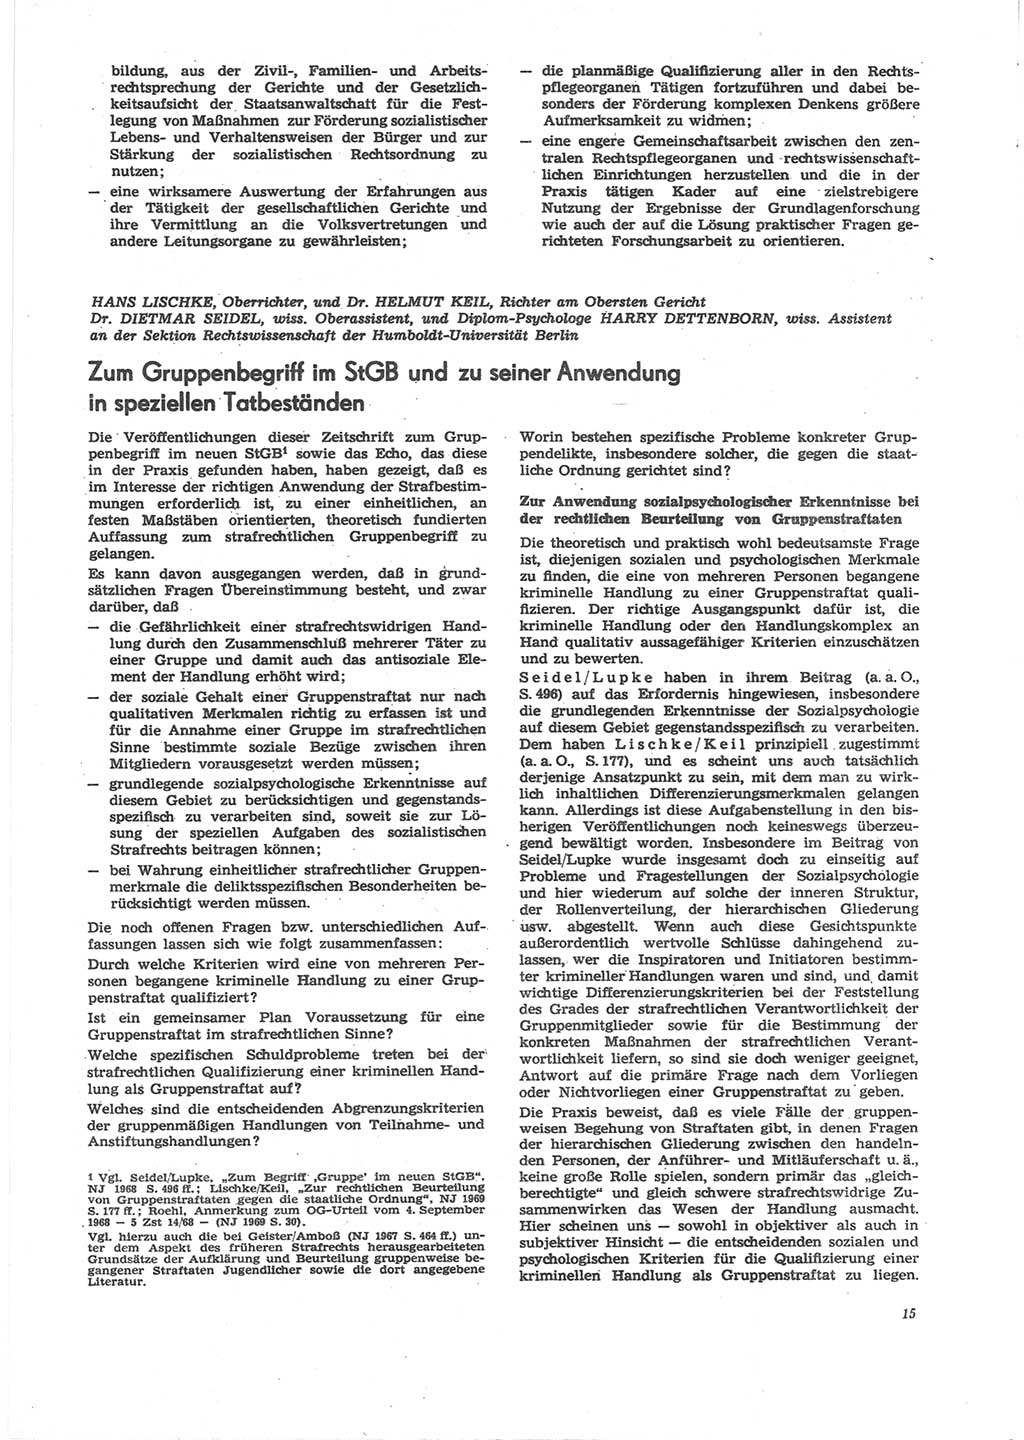 Neue Justiz (NJ), Zeitschrift für Recht und Rechtswissenschaft [Deutsche Demokratische Republik (DDR)], 24. Jahrgang 1970, Seite 15 (NJ DDR 1970, S. 15)